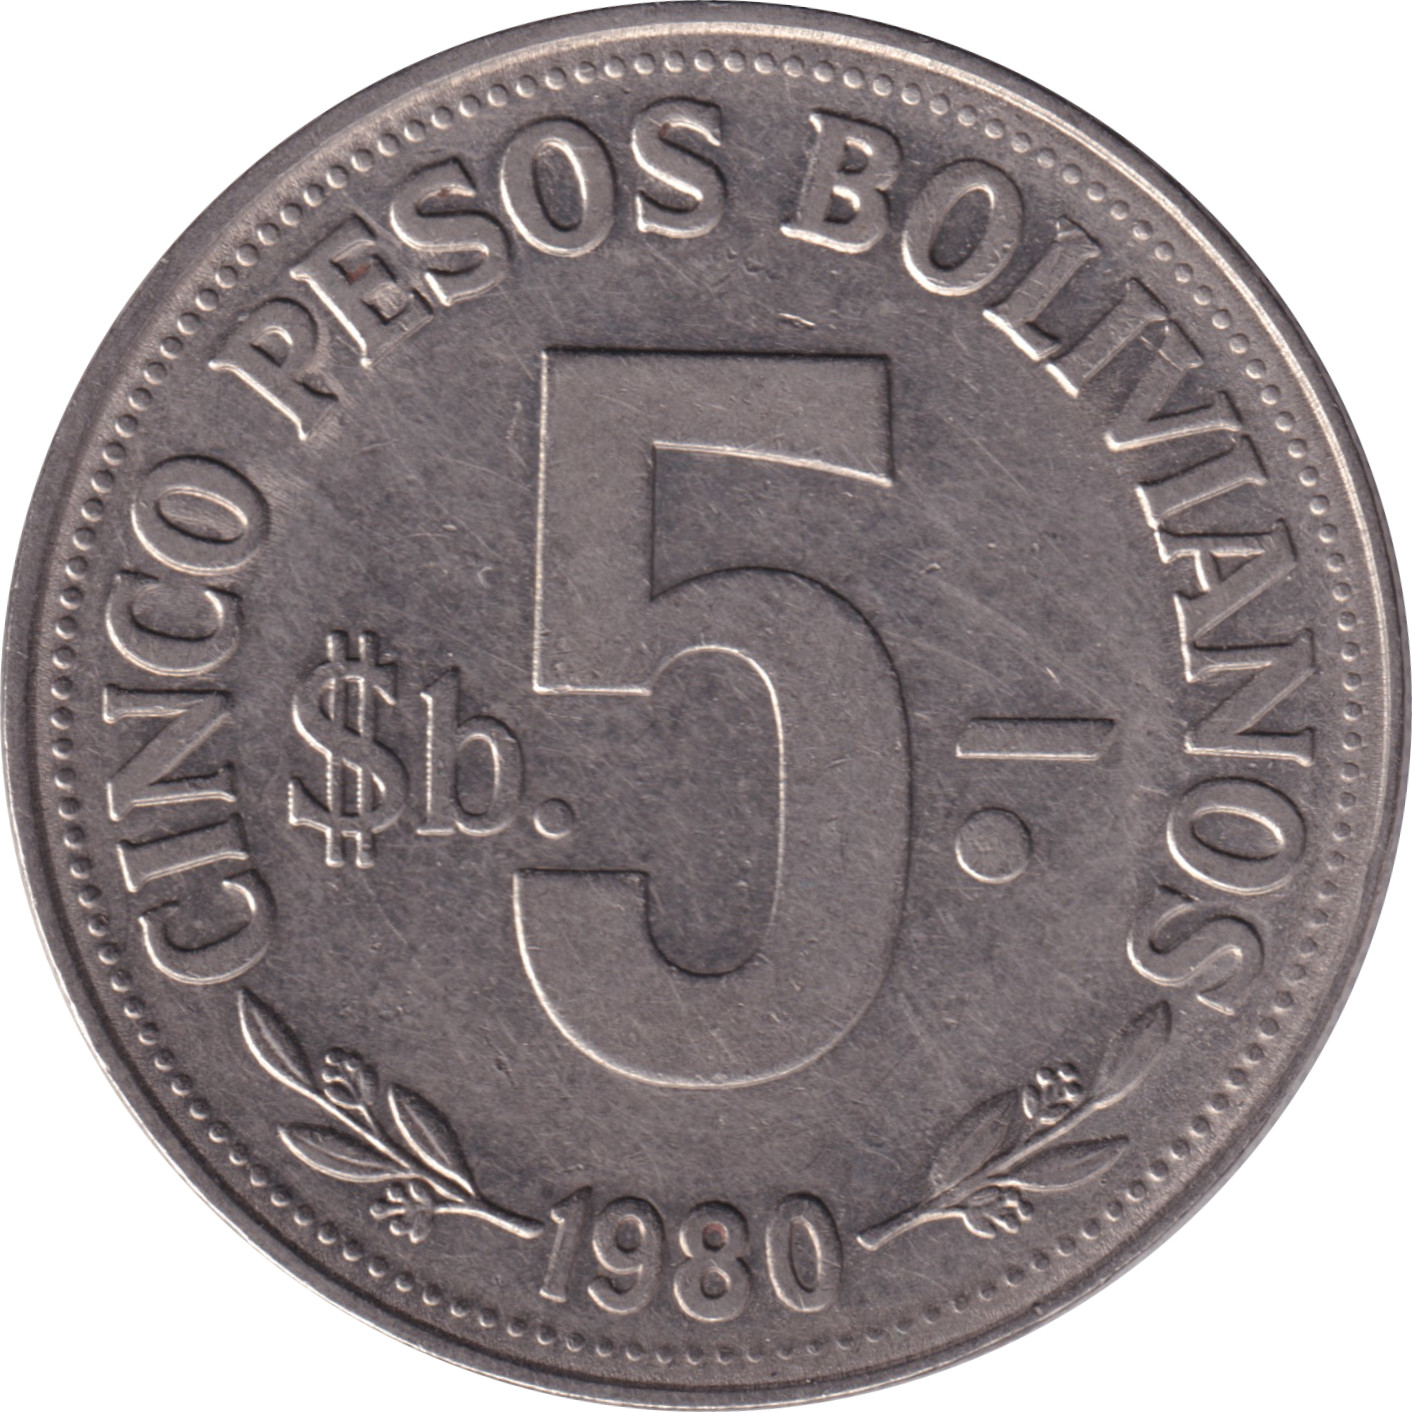 5 pesos - Arms